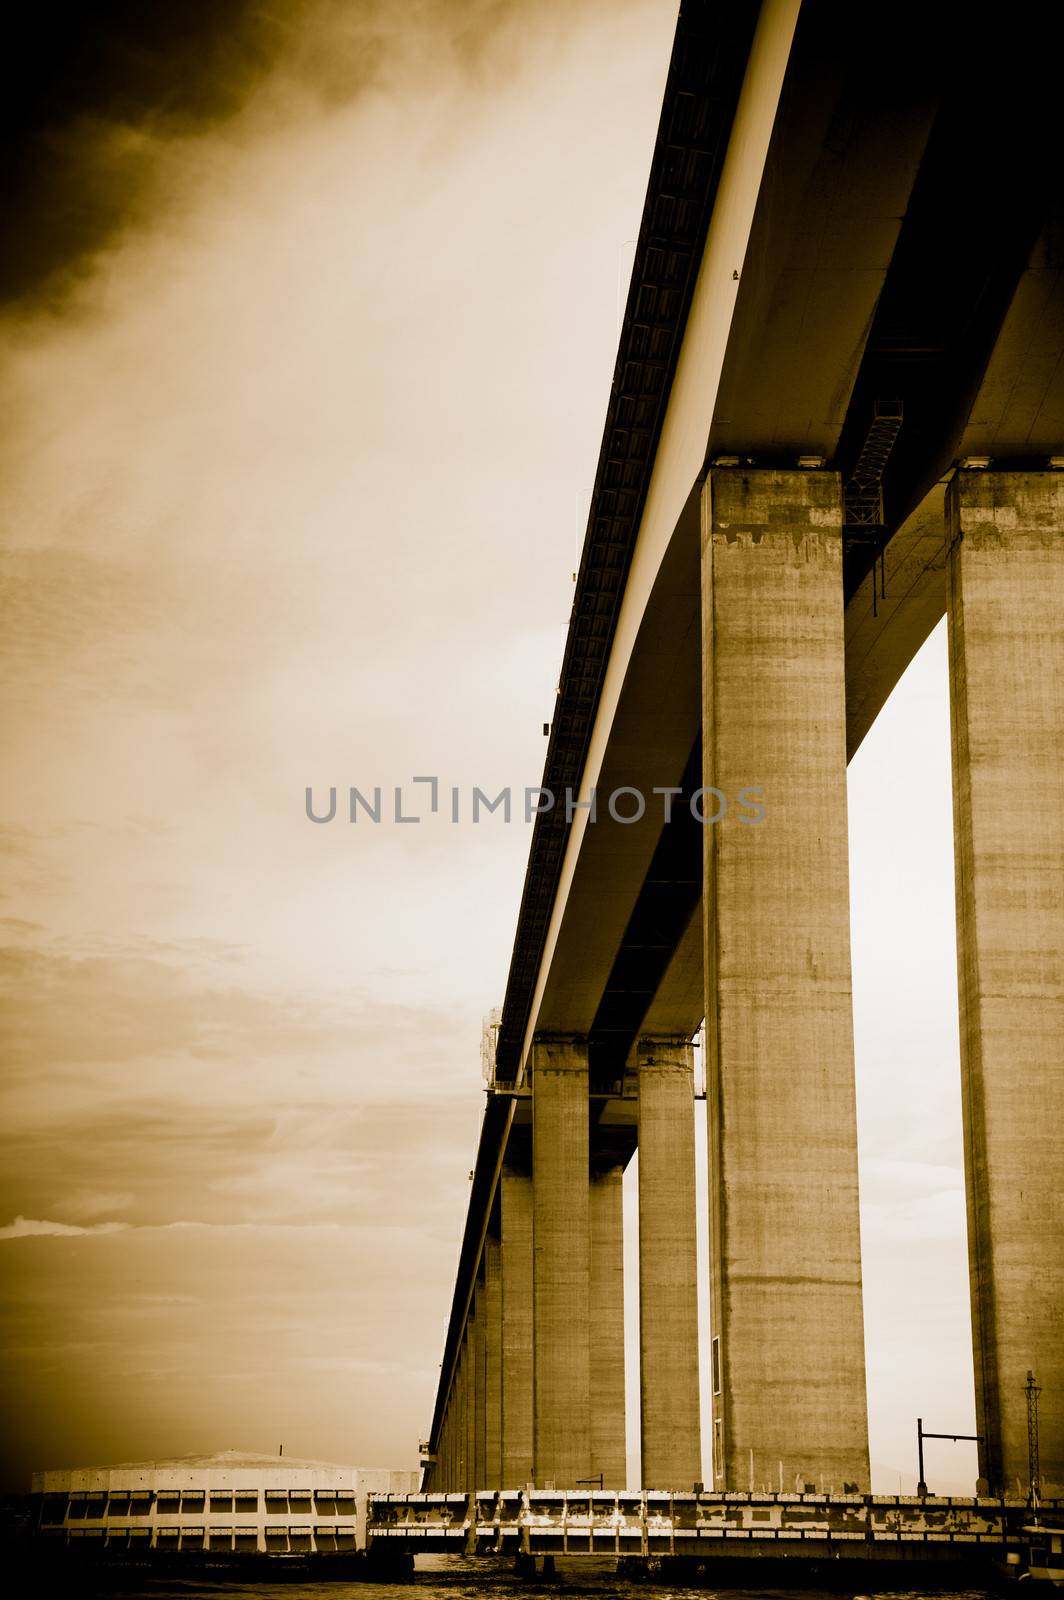 Niteroi Bridge in Brazil by CelsoDiniz